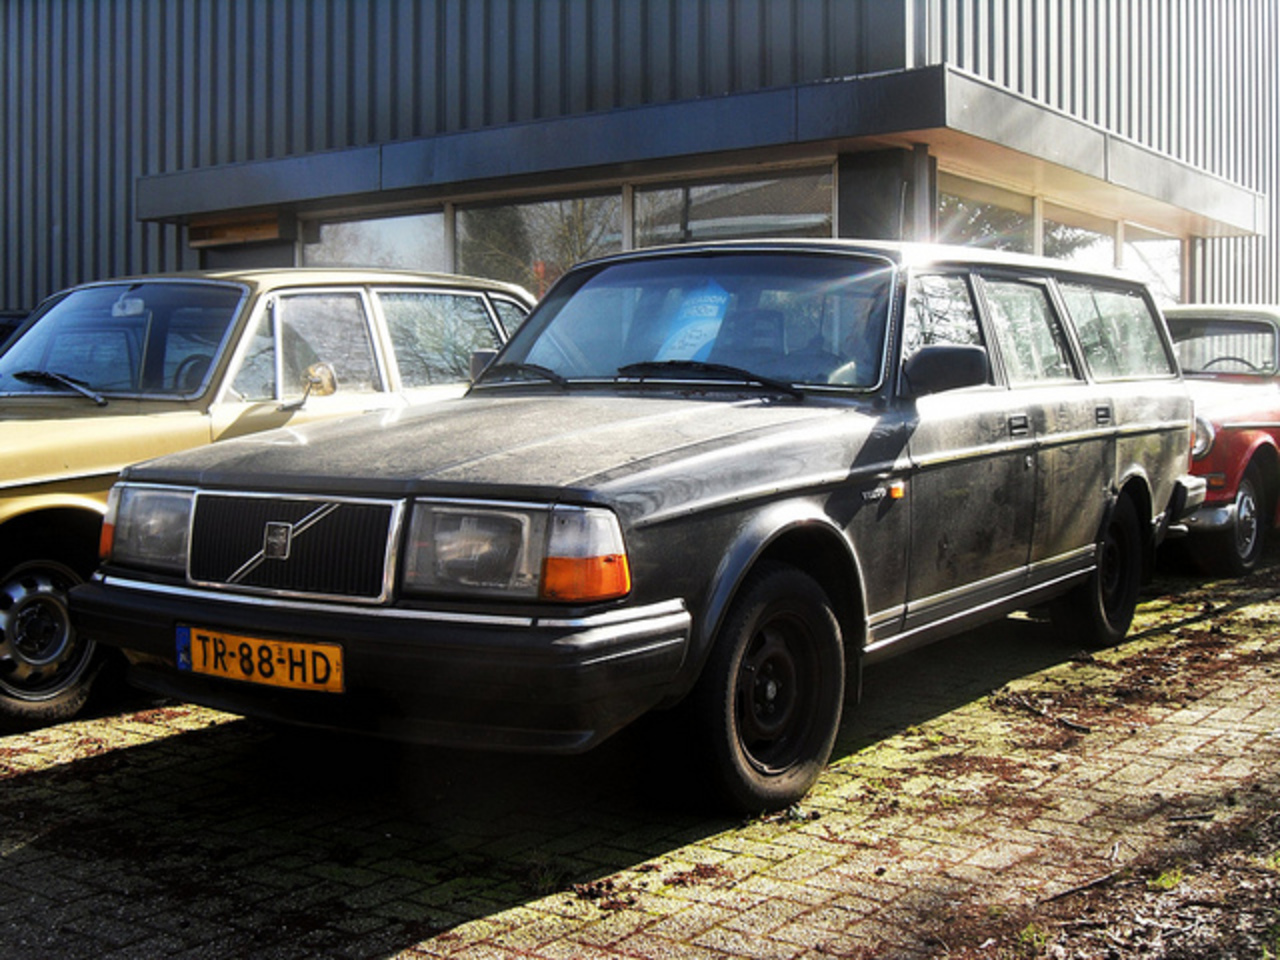 1988 Volvo 245 GL TR-88-HD / Flickr - Partage de photos!